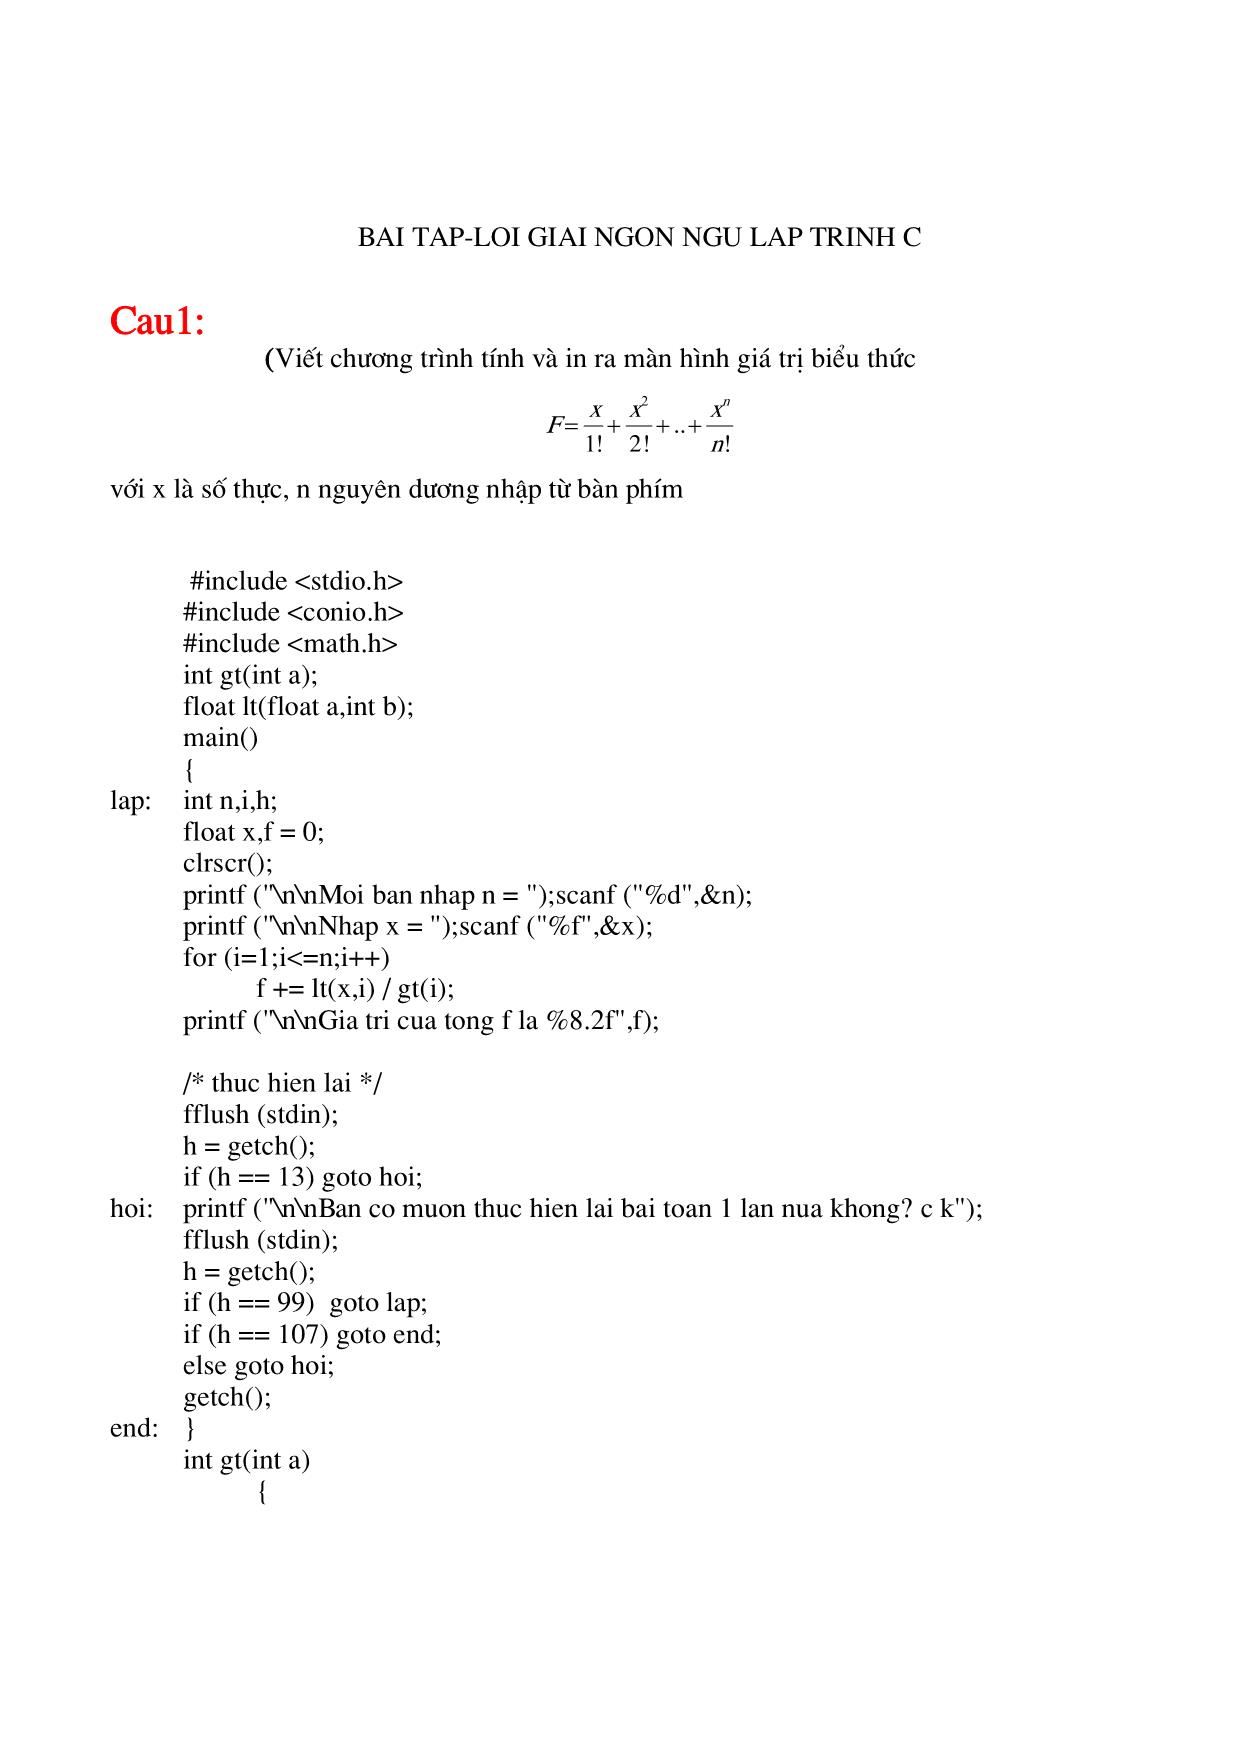 Bài tập lời giải ngôn ngữ lập trình C trang 1